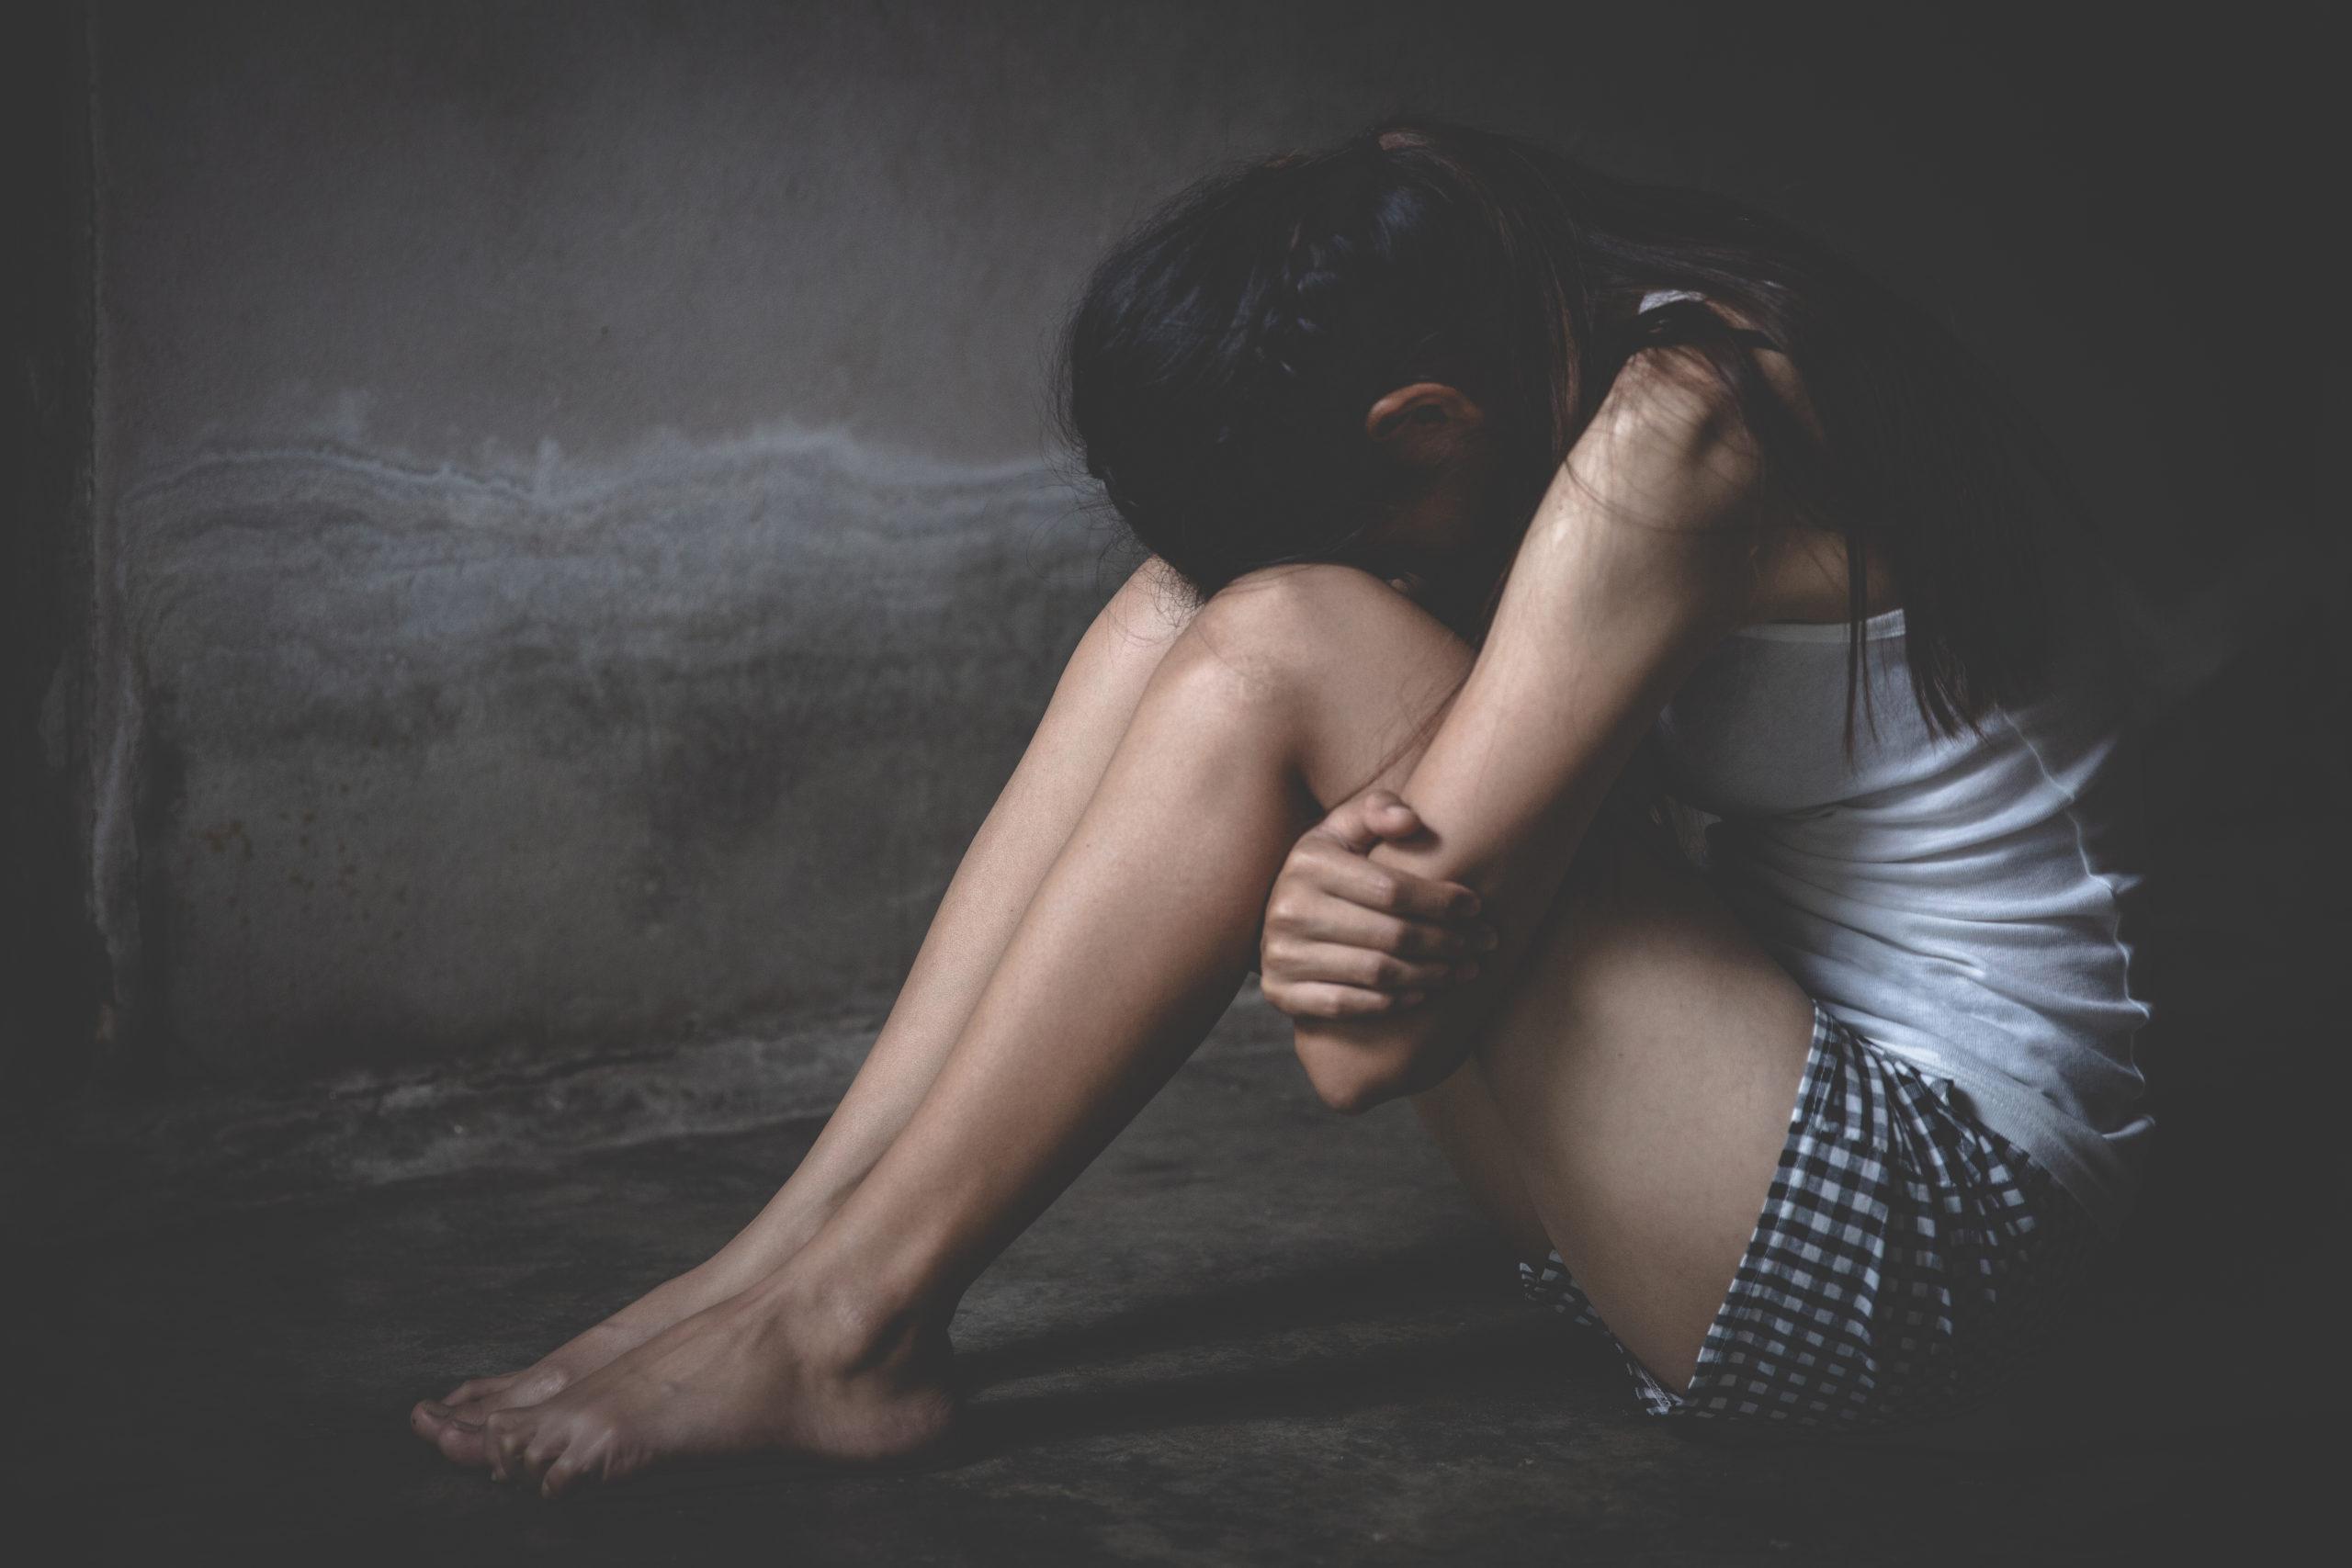 Ρέθυμνο: Συνεχίζονται οι έρευνες για τον βιασμό της ανήλικης | Στην ανακρίτρια η 15χρονη - Αναμένονται οι καταθέσεις 11 κατηγορουμένων | ENA News Portal